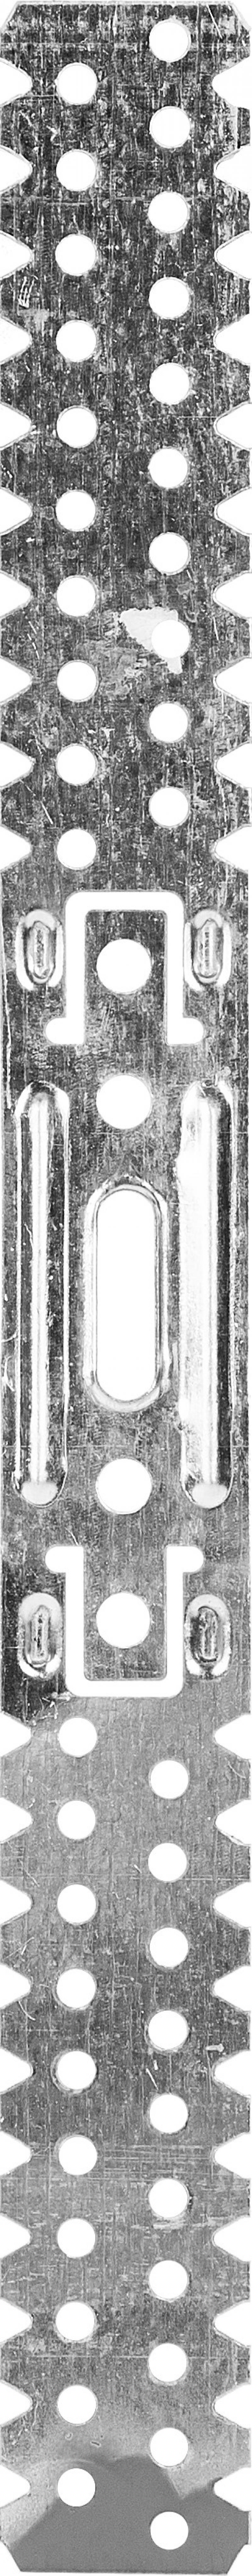 Түзу аспа төбелік профильге арналған 60x27 мм, Евростандарт